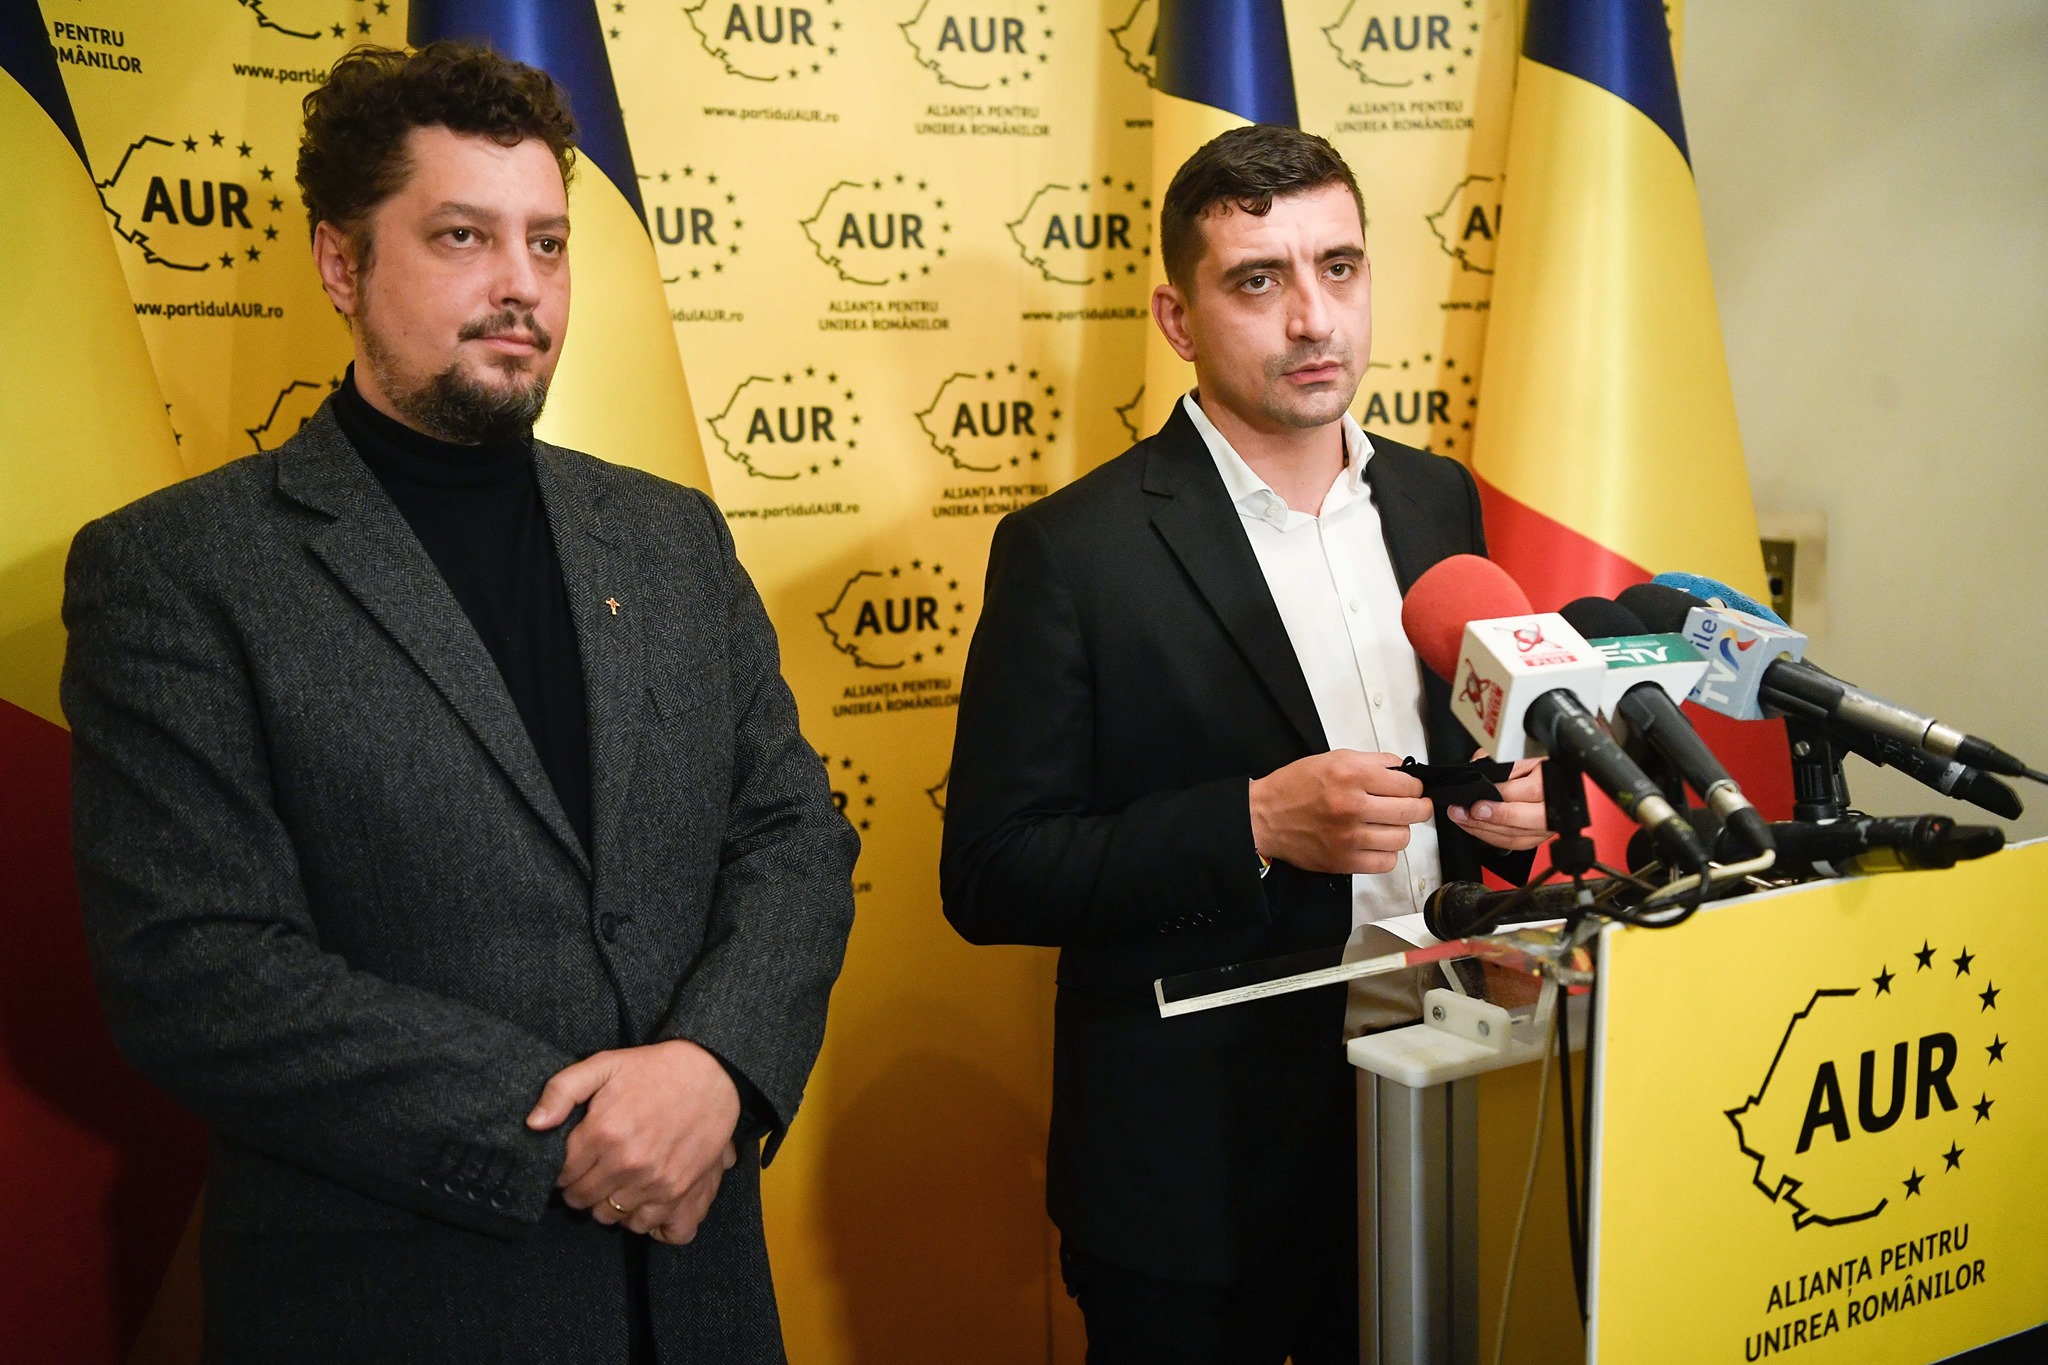 Alexandru Muraru (PNL): AUR trebuie scos în afara legii. Derapajele trebuie pedepsite exemplar